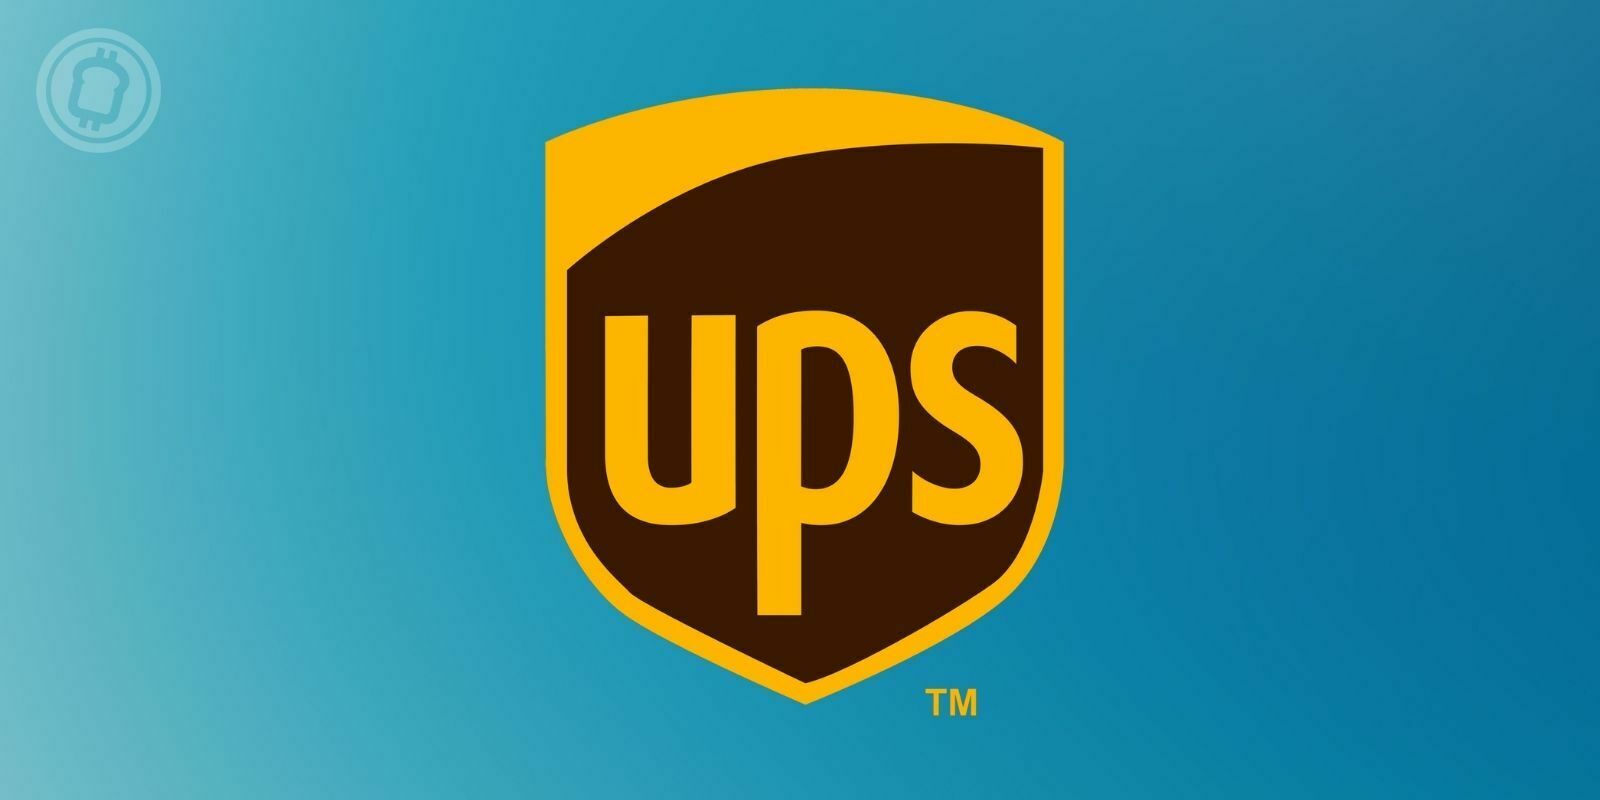 UPS veut lancer son service de livraison dans le metaverse